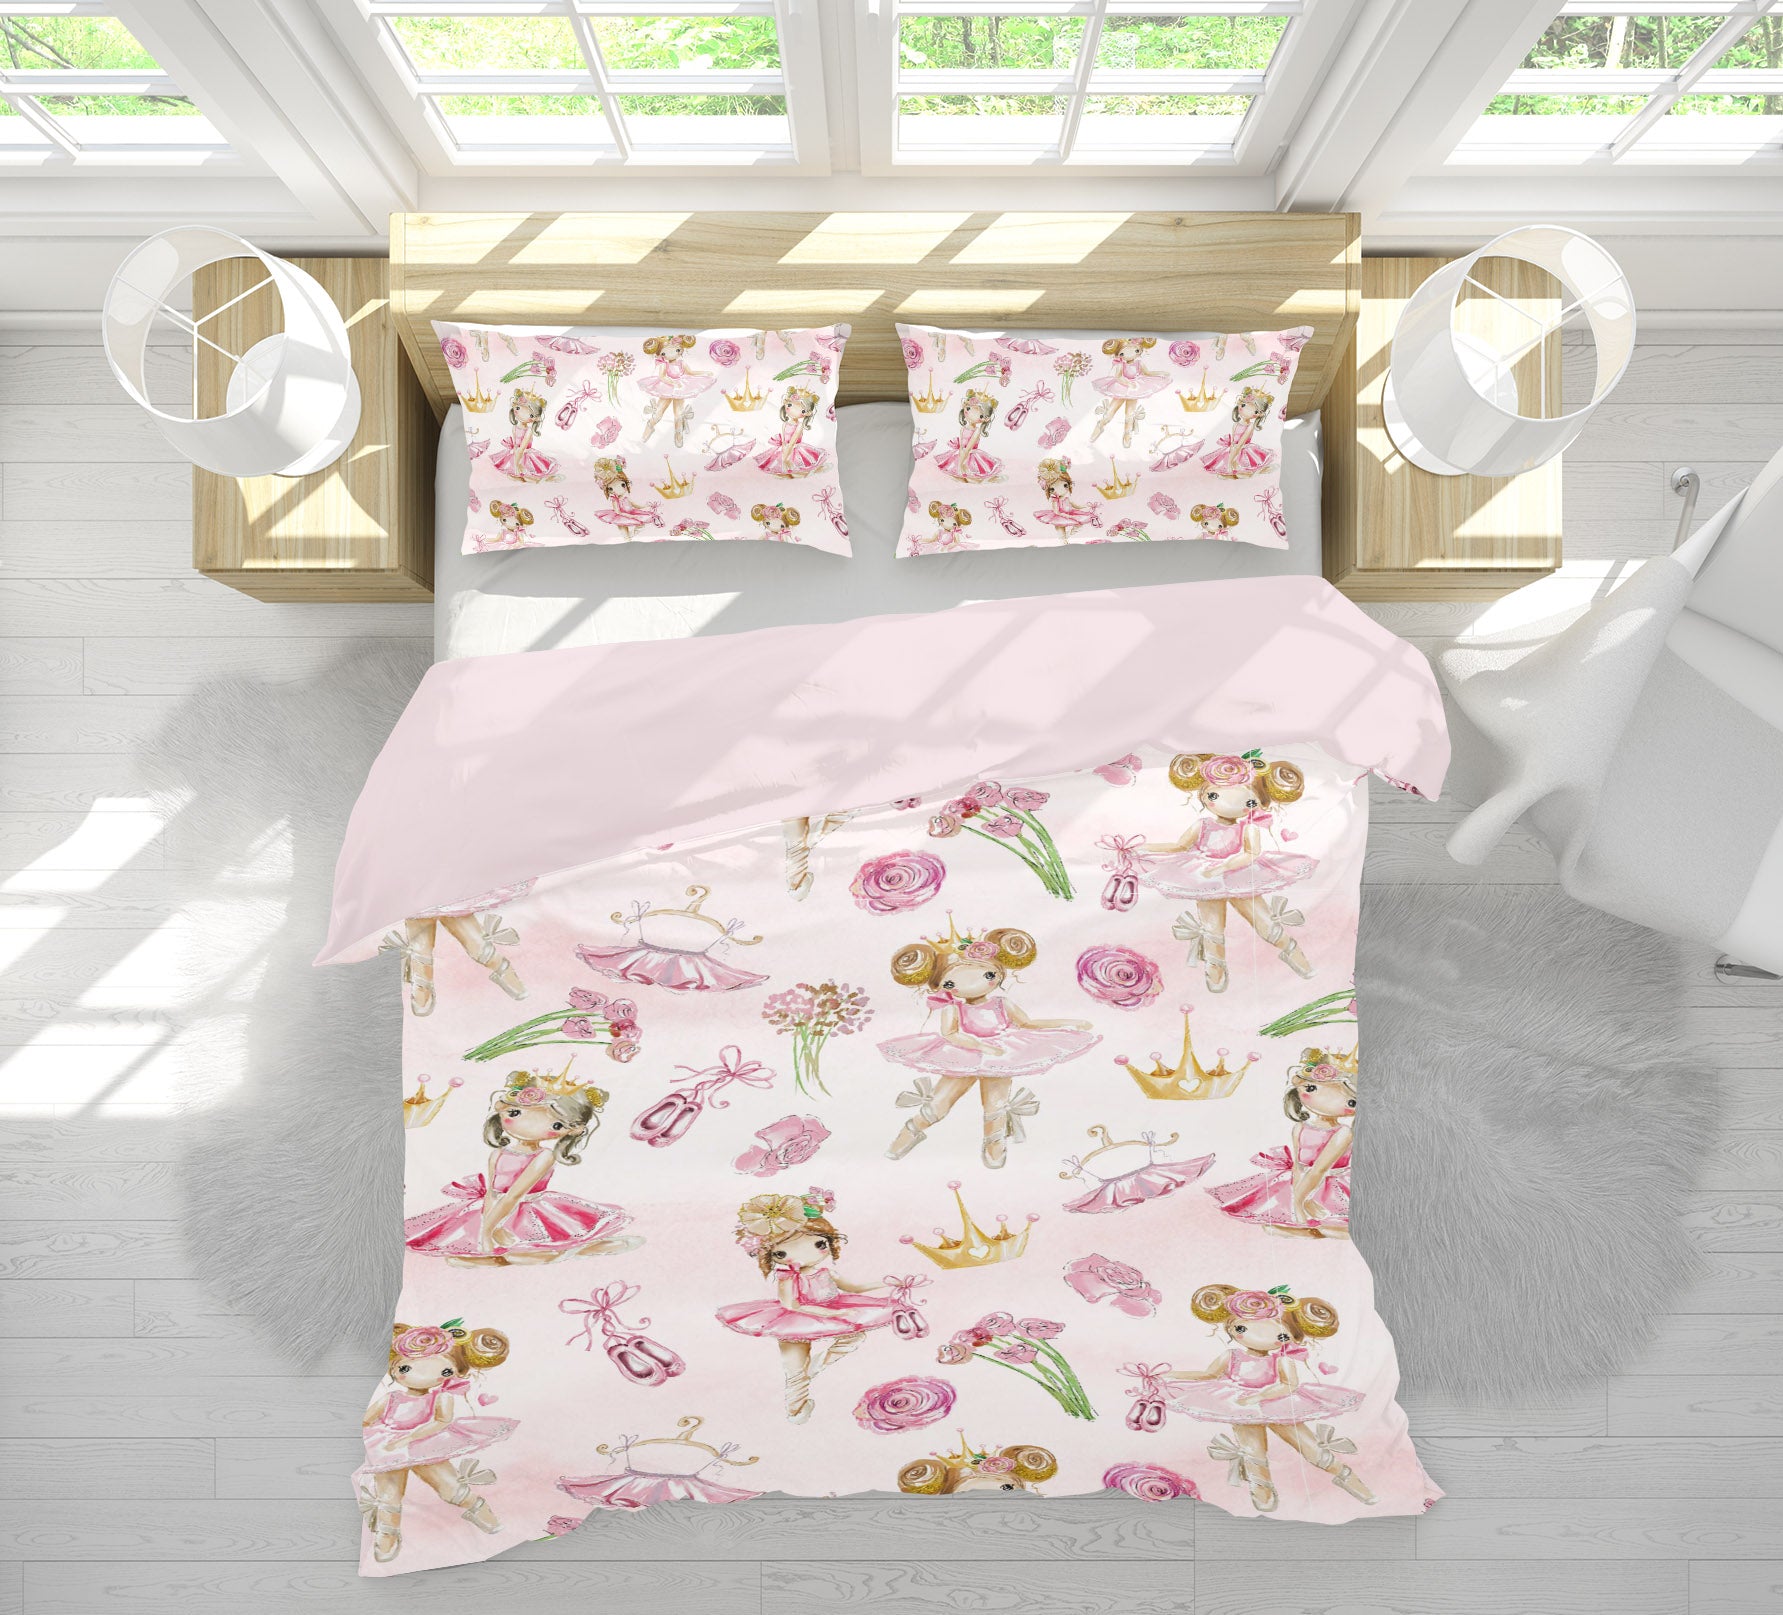 3D Pink Ballet Skirt 216 Uta Naumann Bedding Bed Pillowcases Quilt